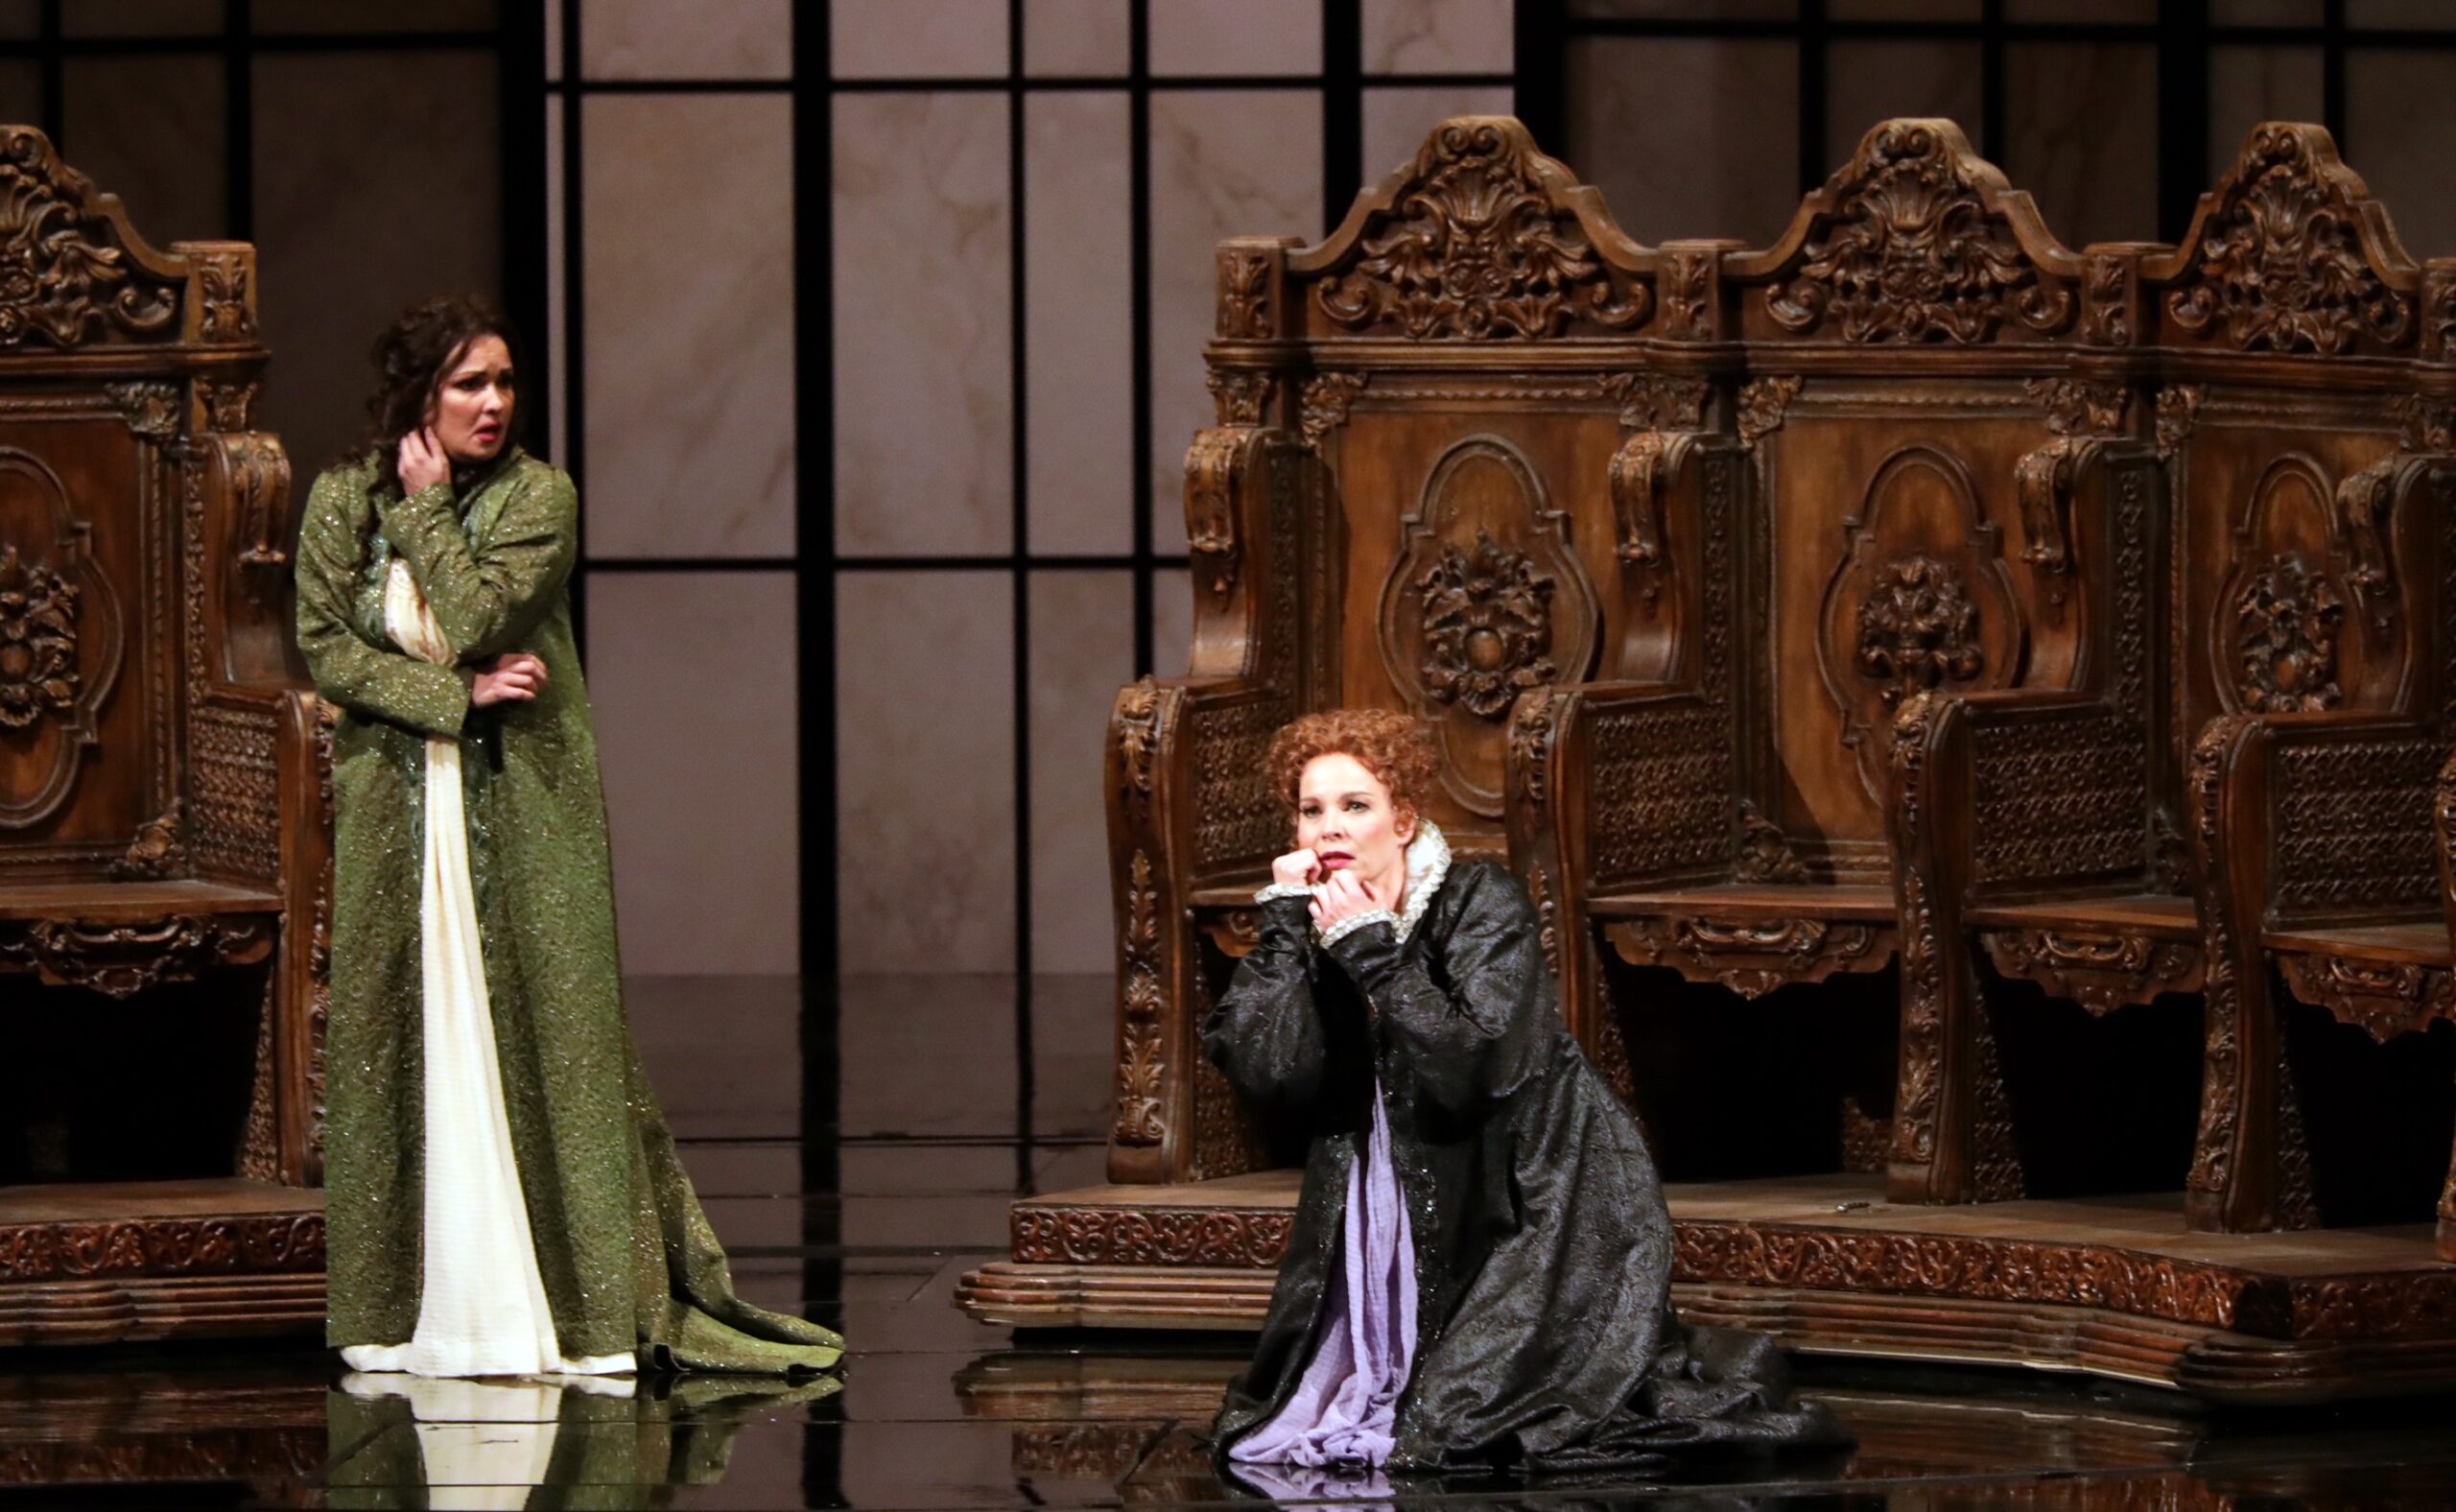 Una escena de "Don Carlo" en la nueva producción de La Scala / Foto: Brescia e Amisano - Teatro alla Scala